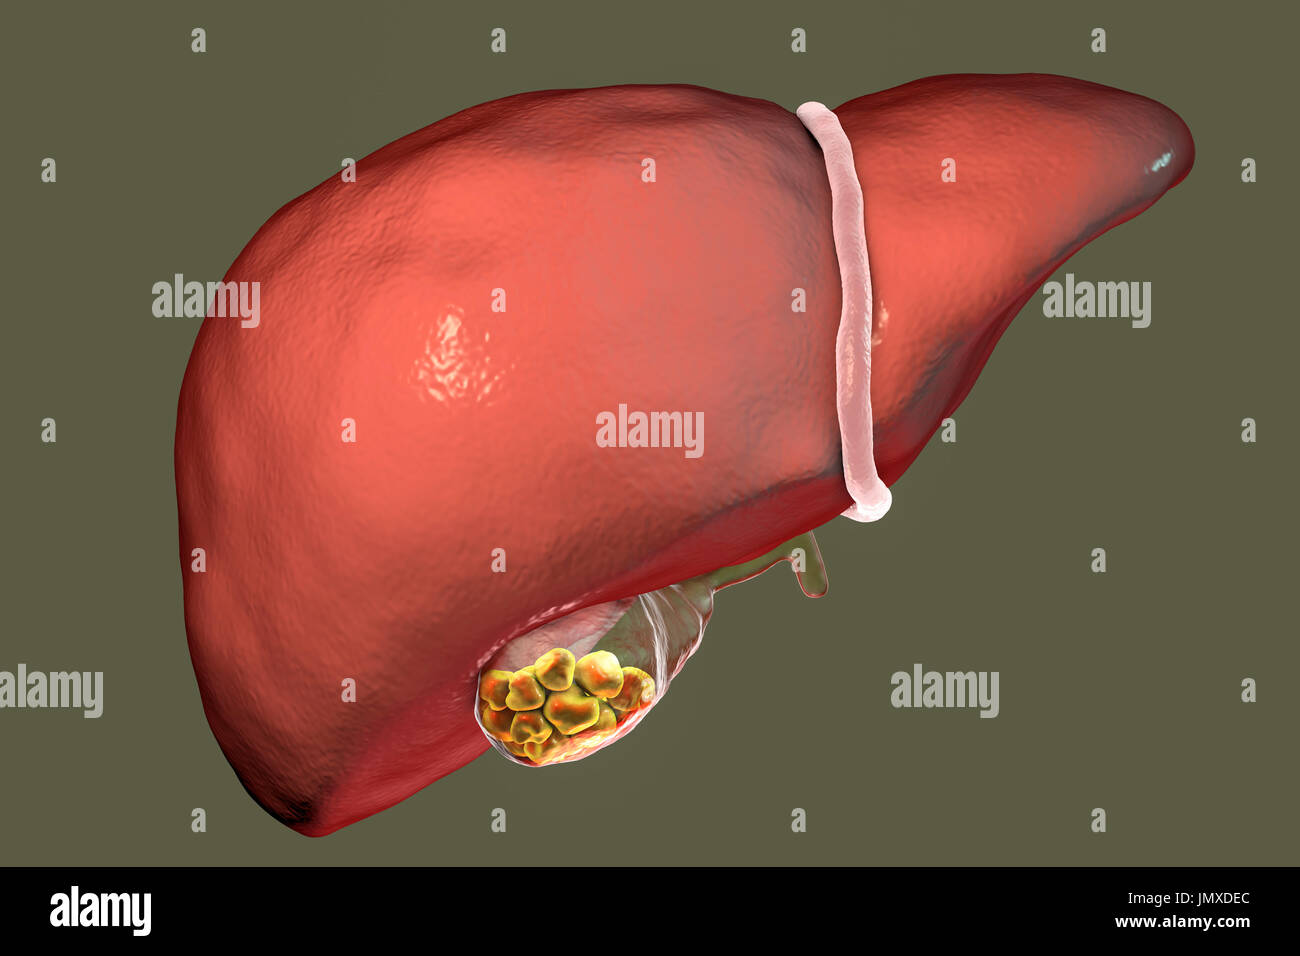 Calcoli biliari. Illustrazione che mostra del fegato e della cistifellea  con calcoli biliari. La cistifellea memorizza la bile, il fluido digestivo  che viene prodotta dal fegato (al di sopra della cistifellea) e